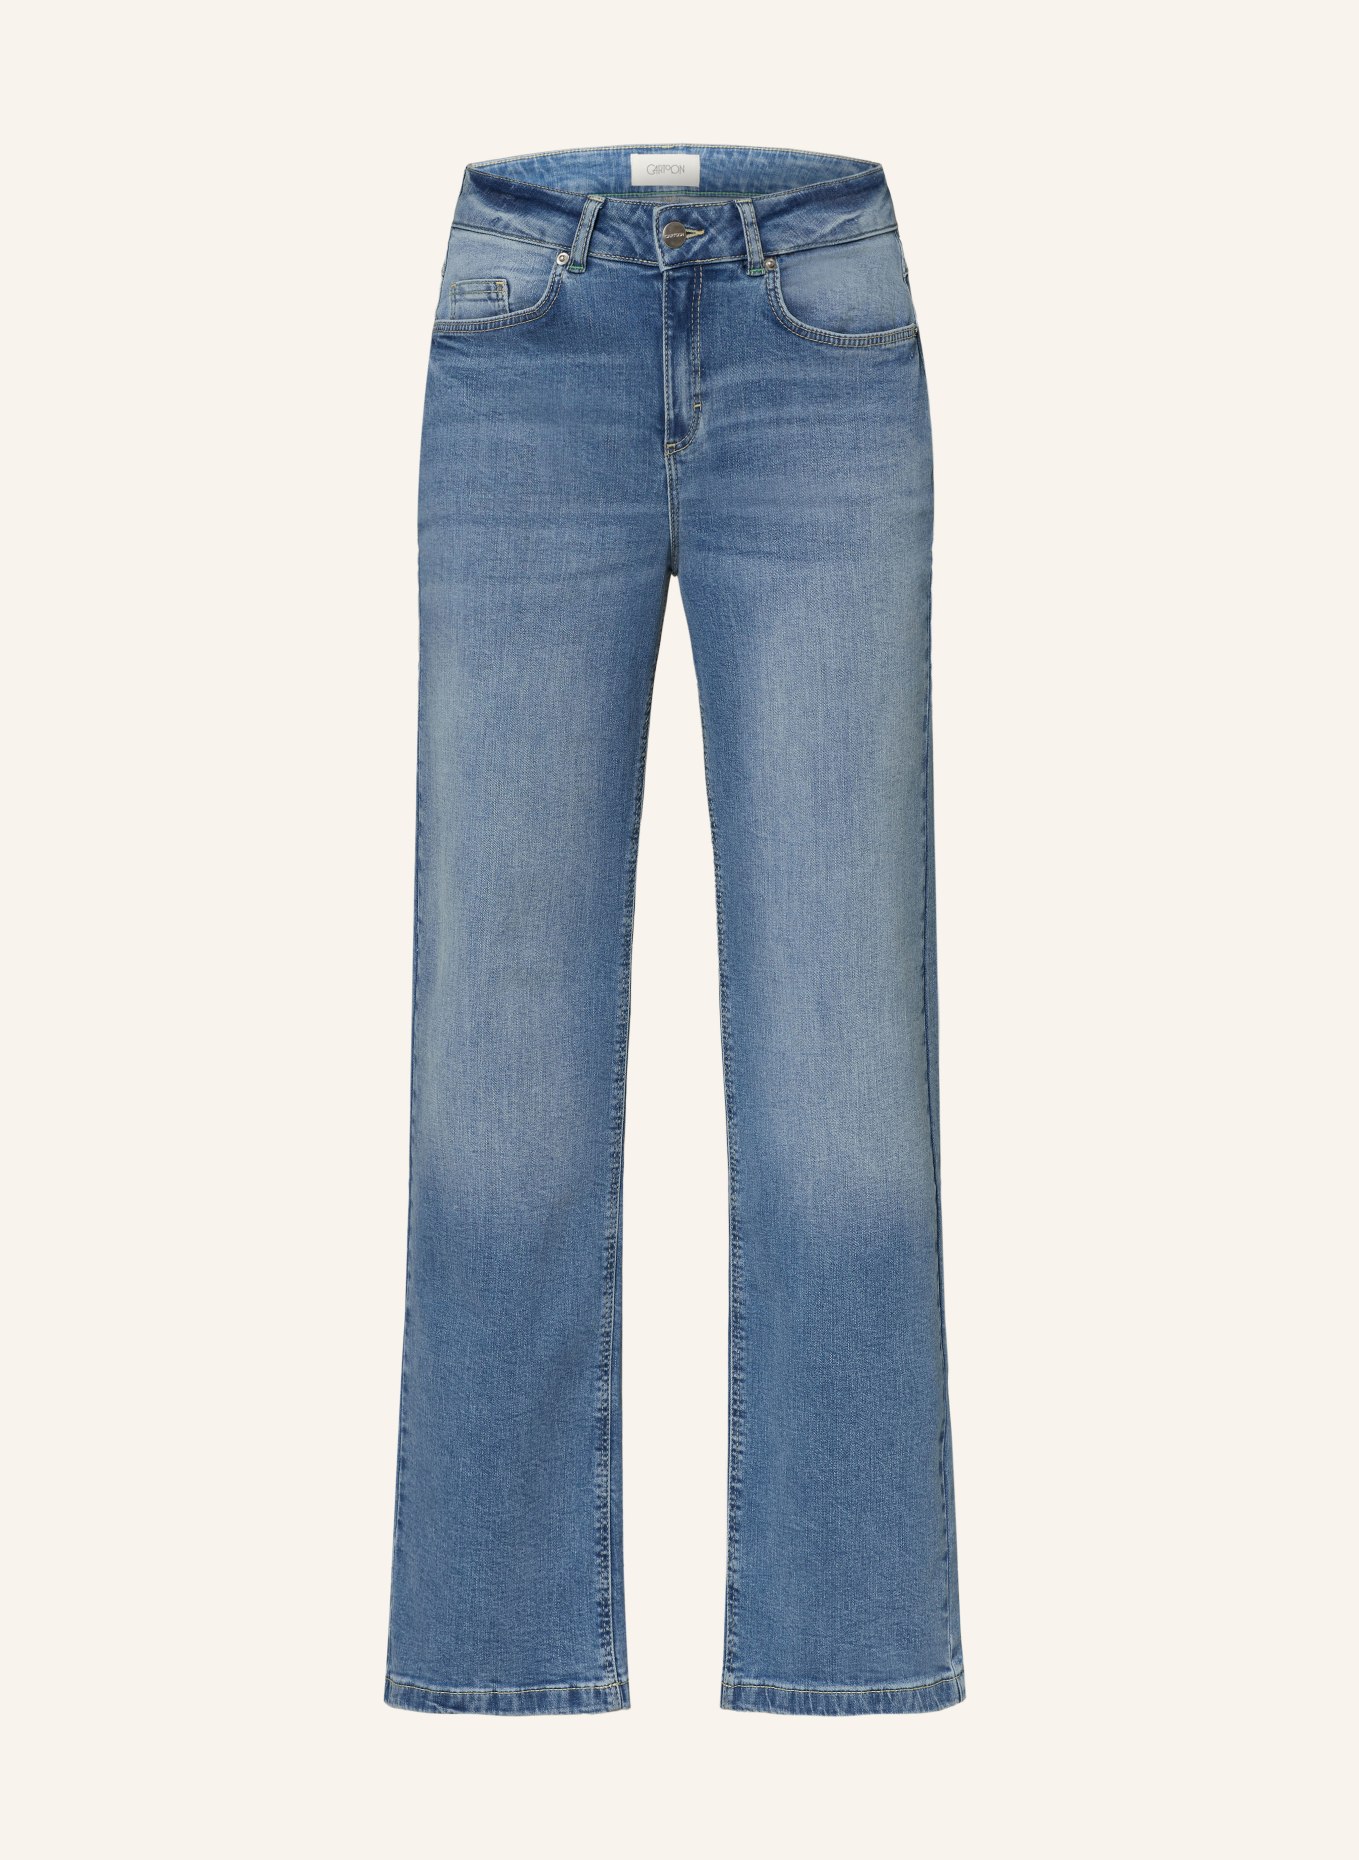 CARTOON Flared jeans, Color: 8619 MIDDLE/BLUE/DENIM (Image 1)